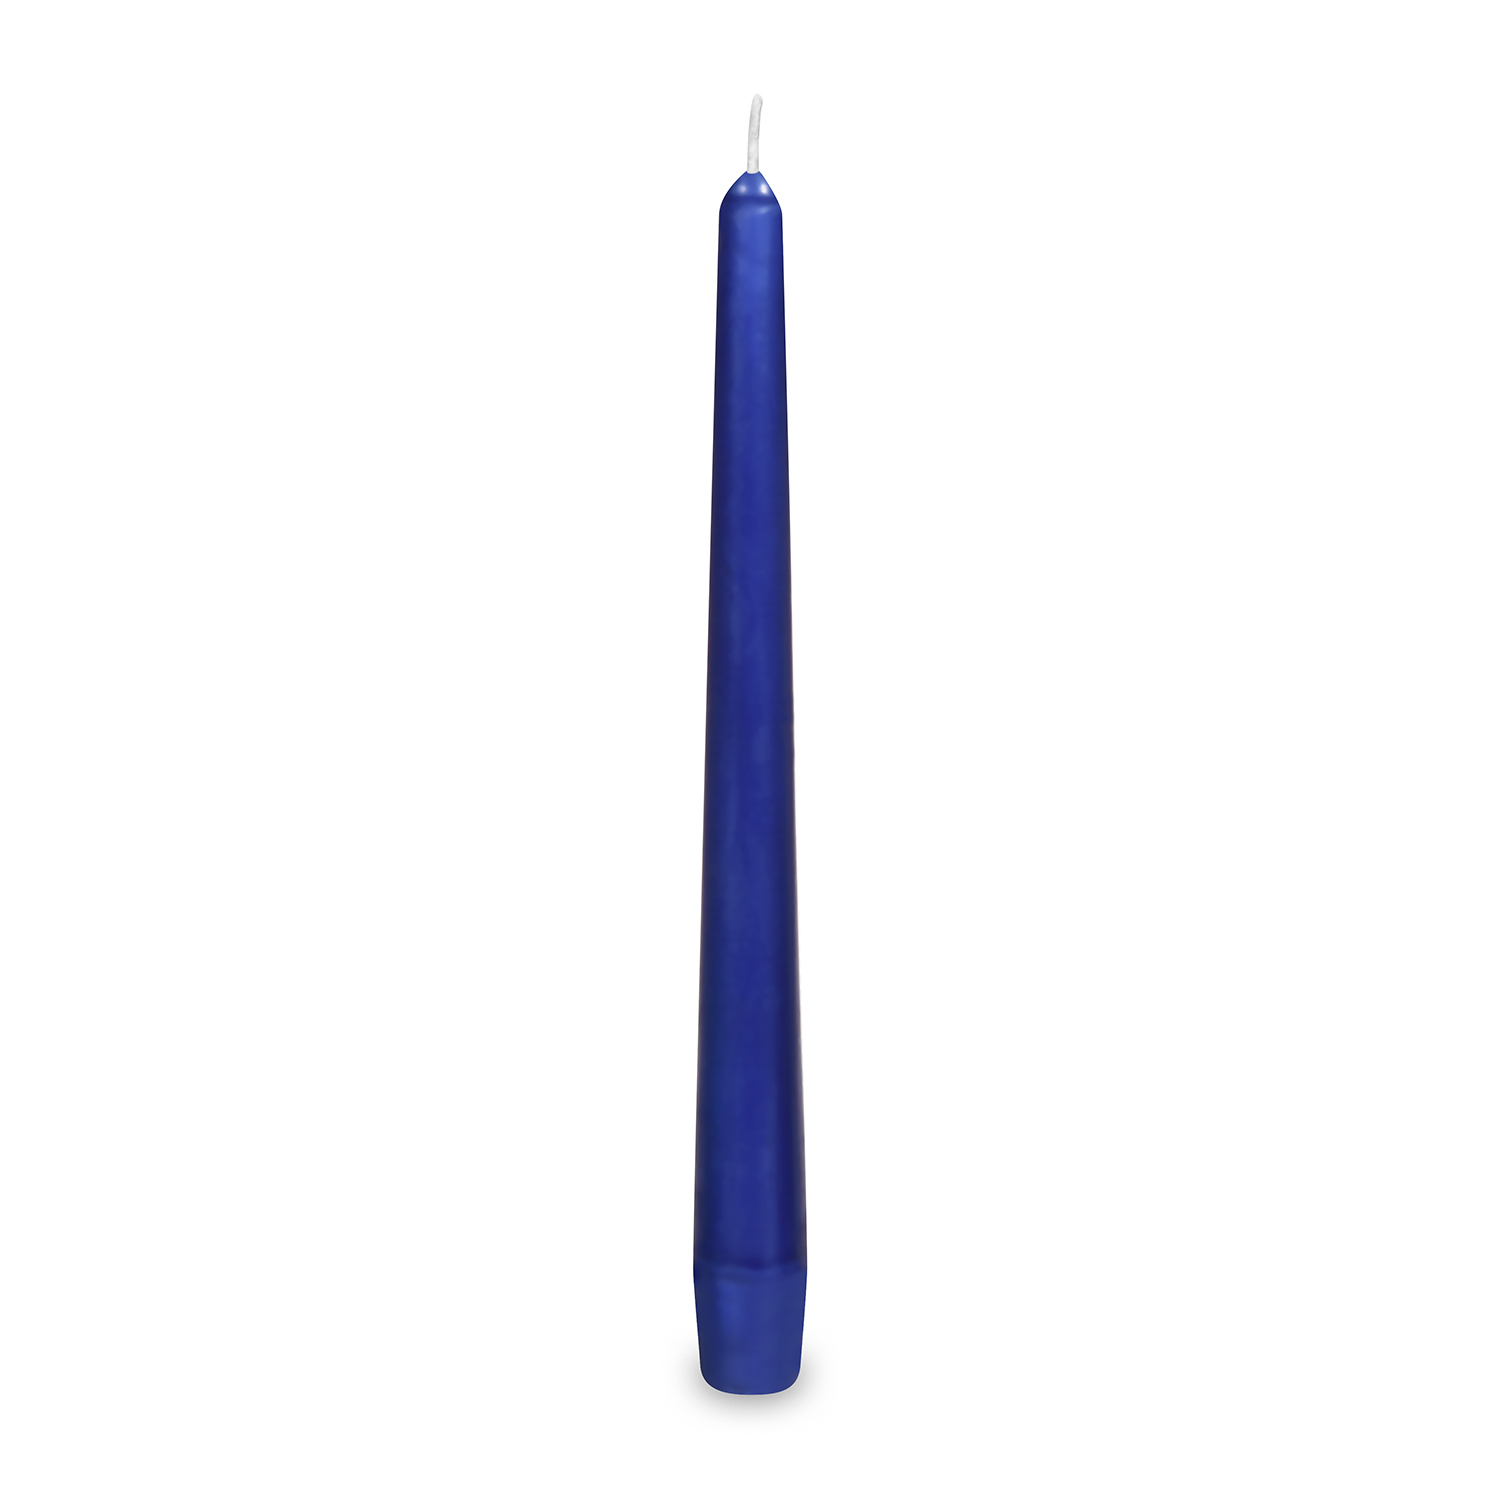 Svíčky 24 cm / 10 ks, tm. modré, kónické